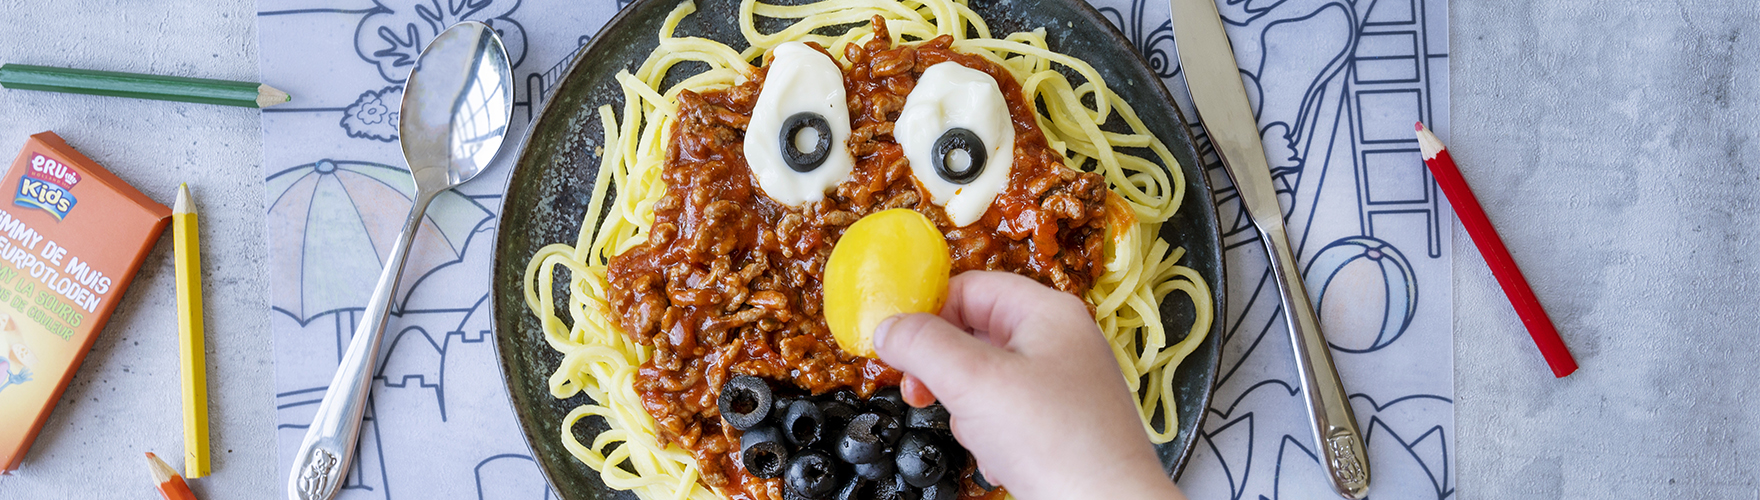 Spaghetti met rode saus en ERU Kids